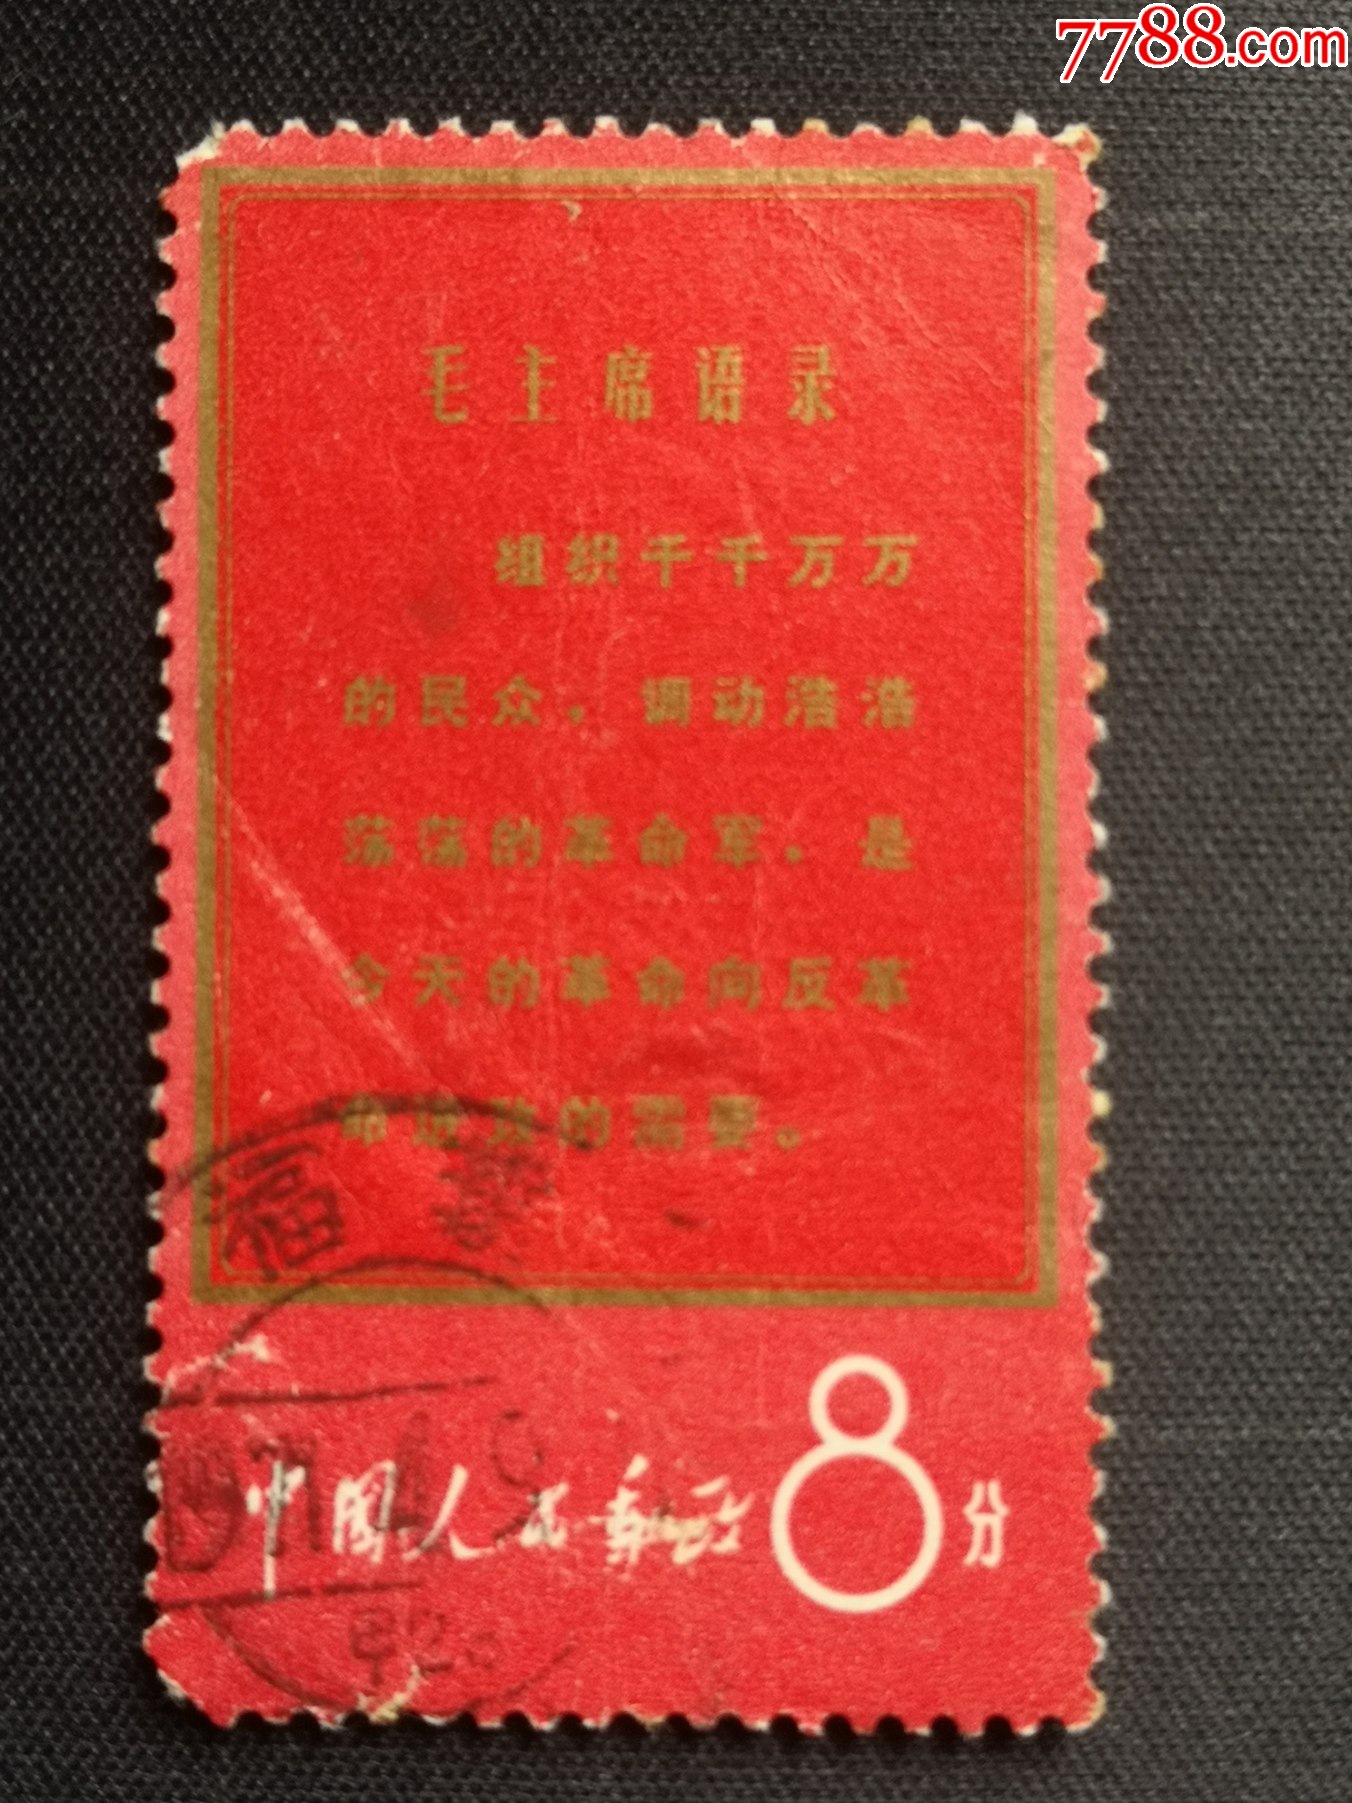 文1--战无不胜的毛泽东思想万岁【组织千千万万的民众】-新中国邮票 